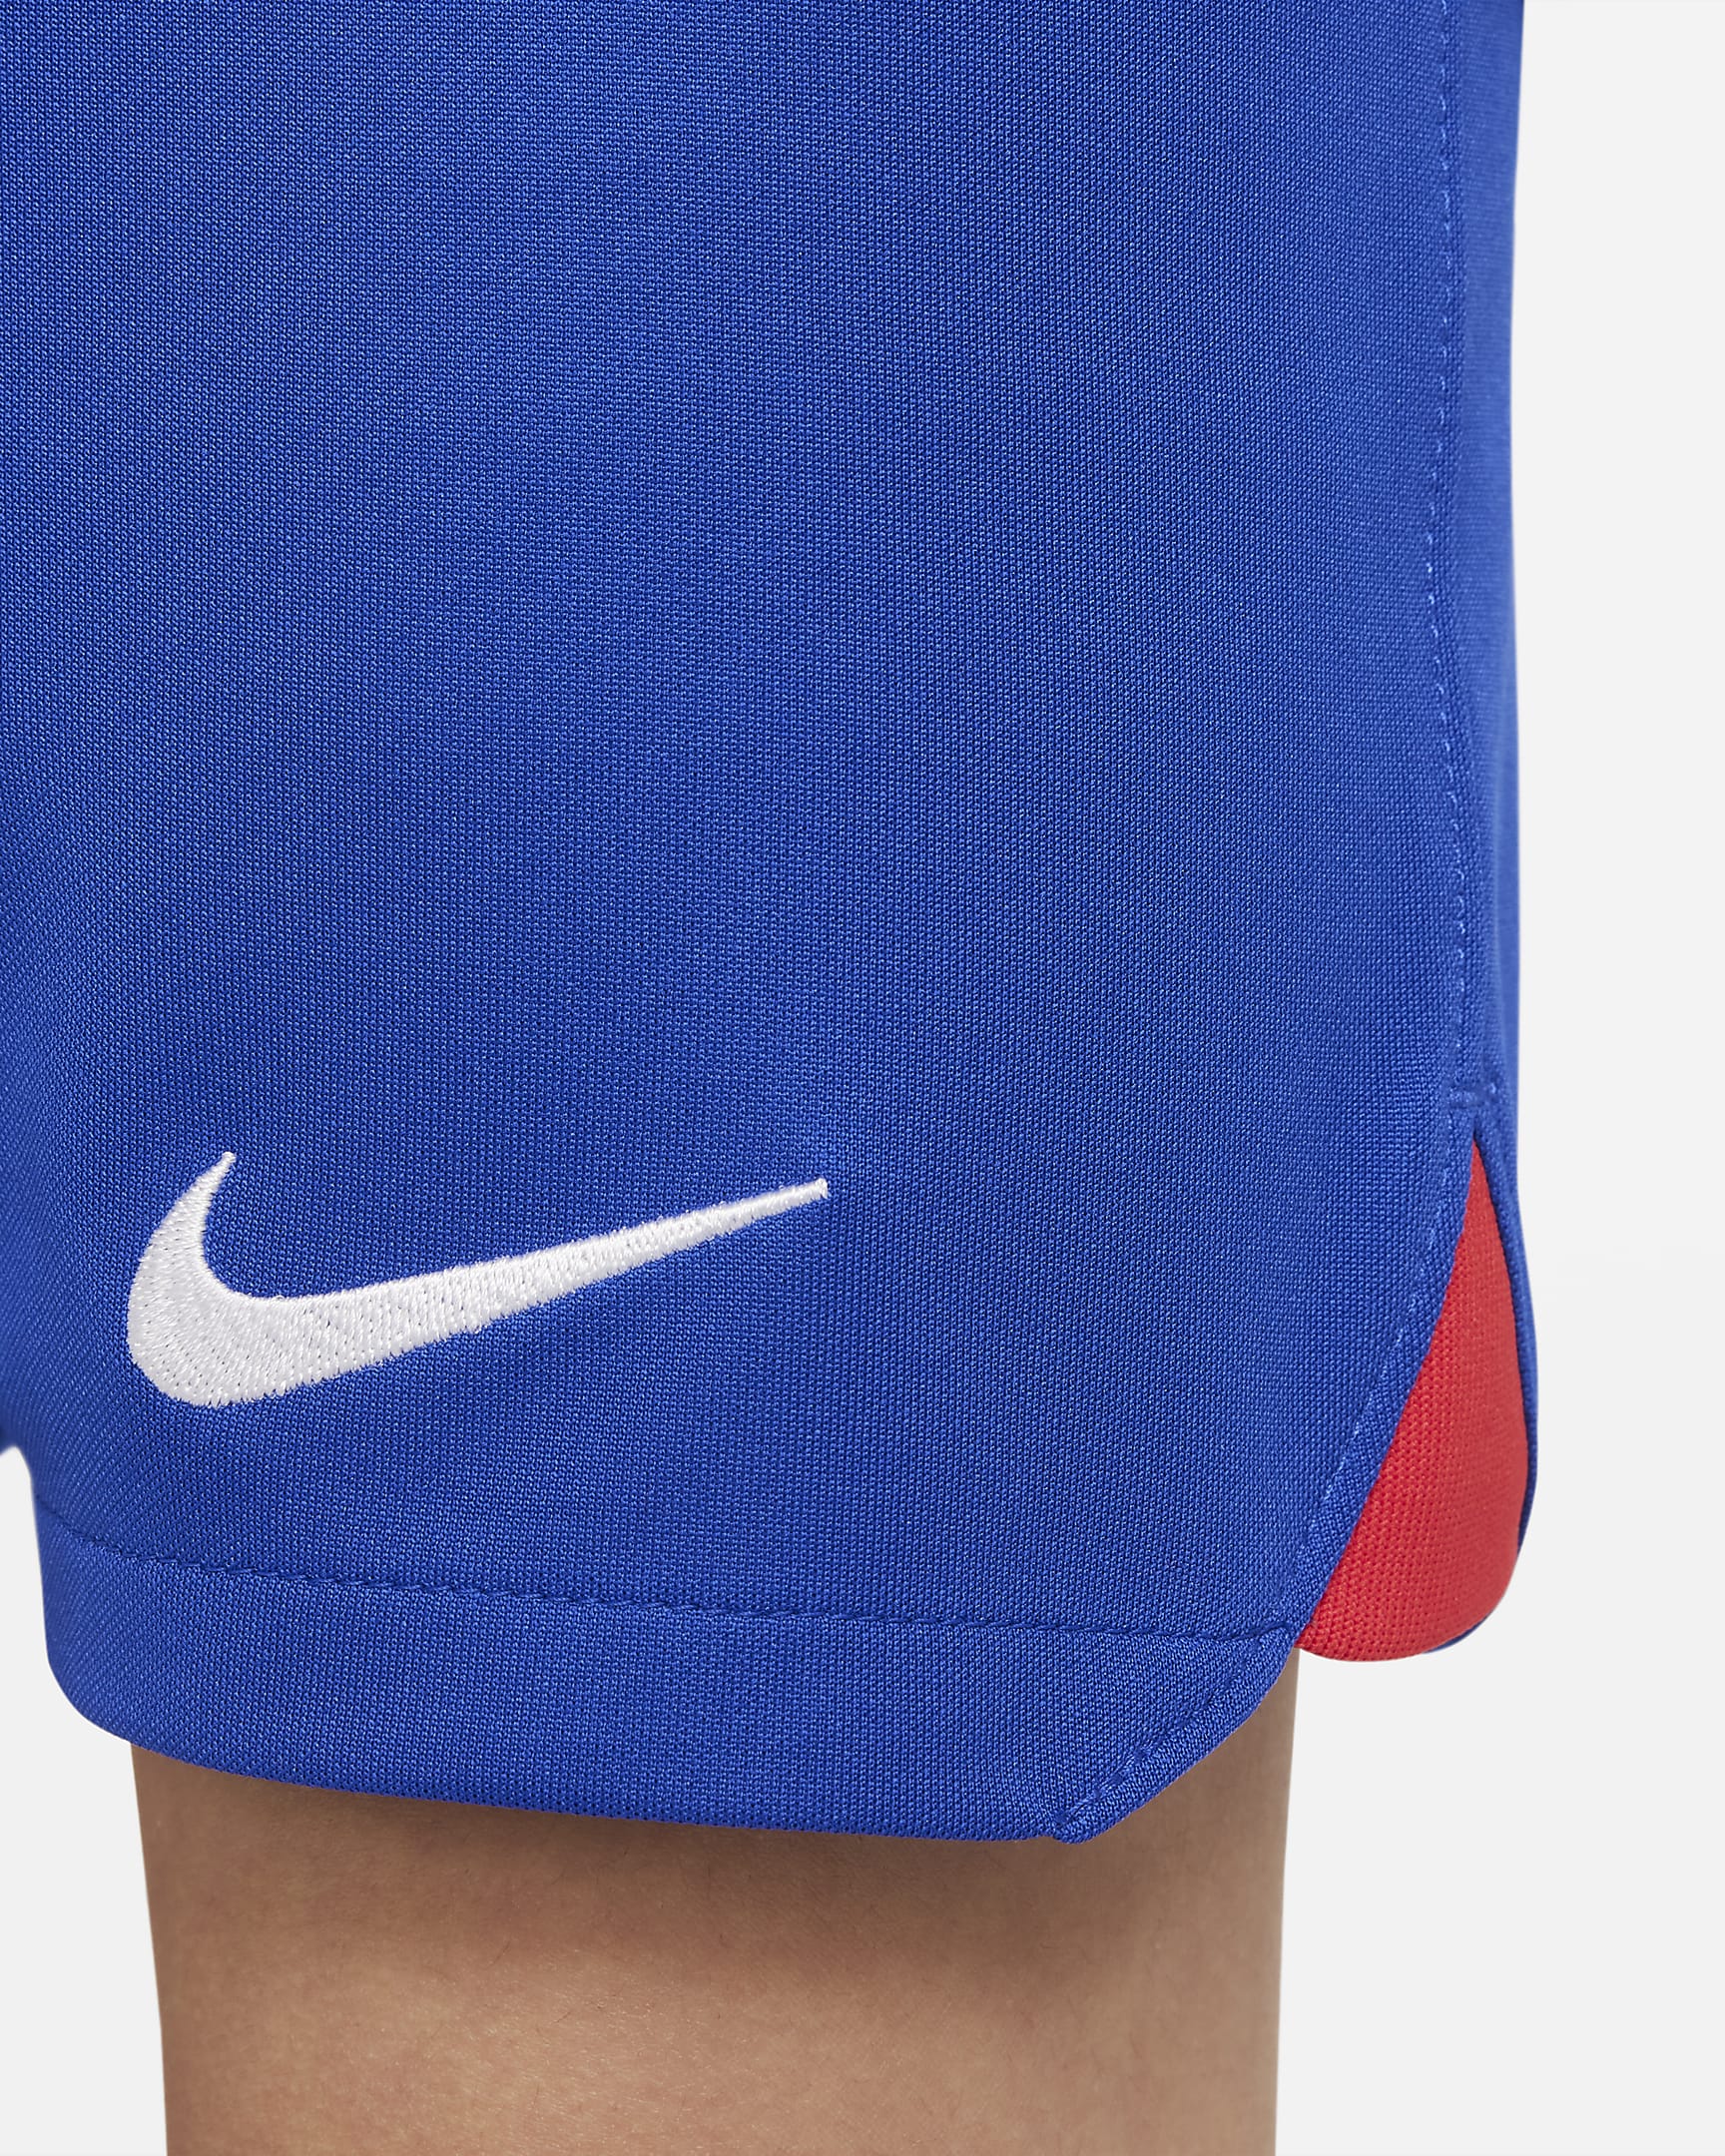 Kit de fútbol de visitante para niños talla pequeña Nike Dri-FIT U.S ...